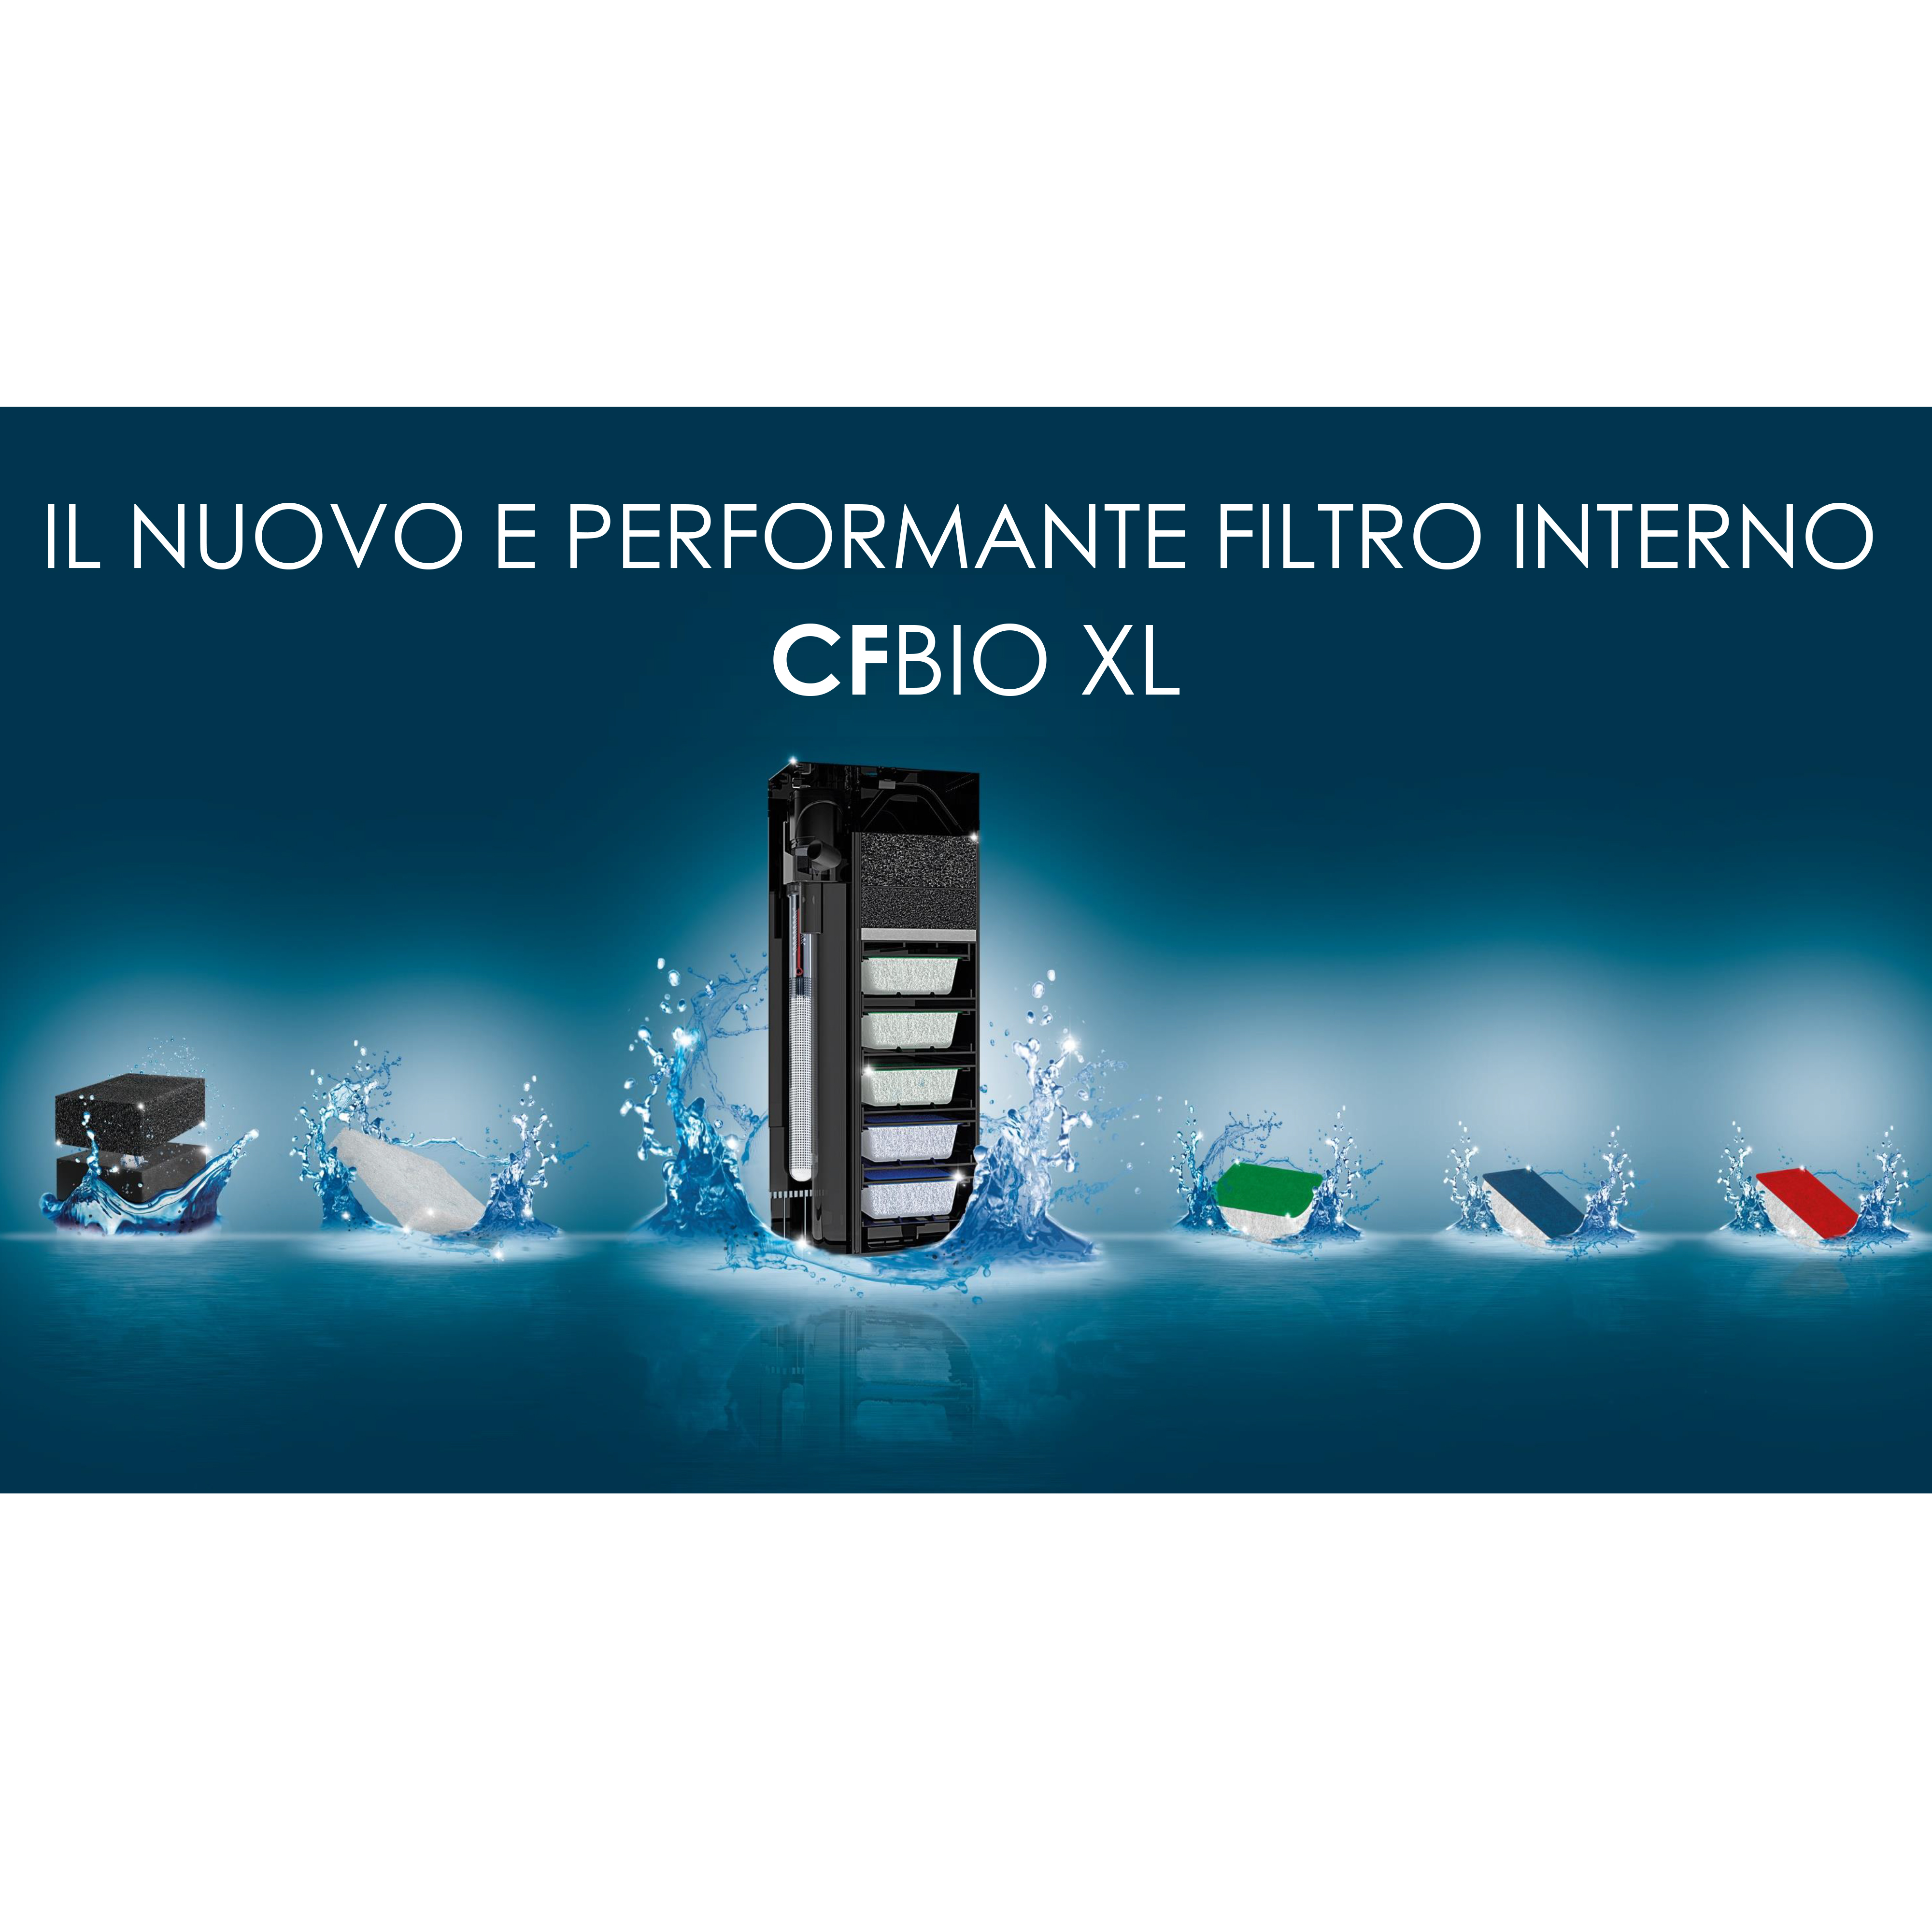 Ciano Aquarium Emotions Nature Pro 60 Mystic Acquario Filtro Interno 61,2x40,2xh 56cm 108lt